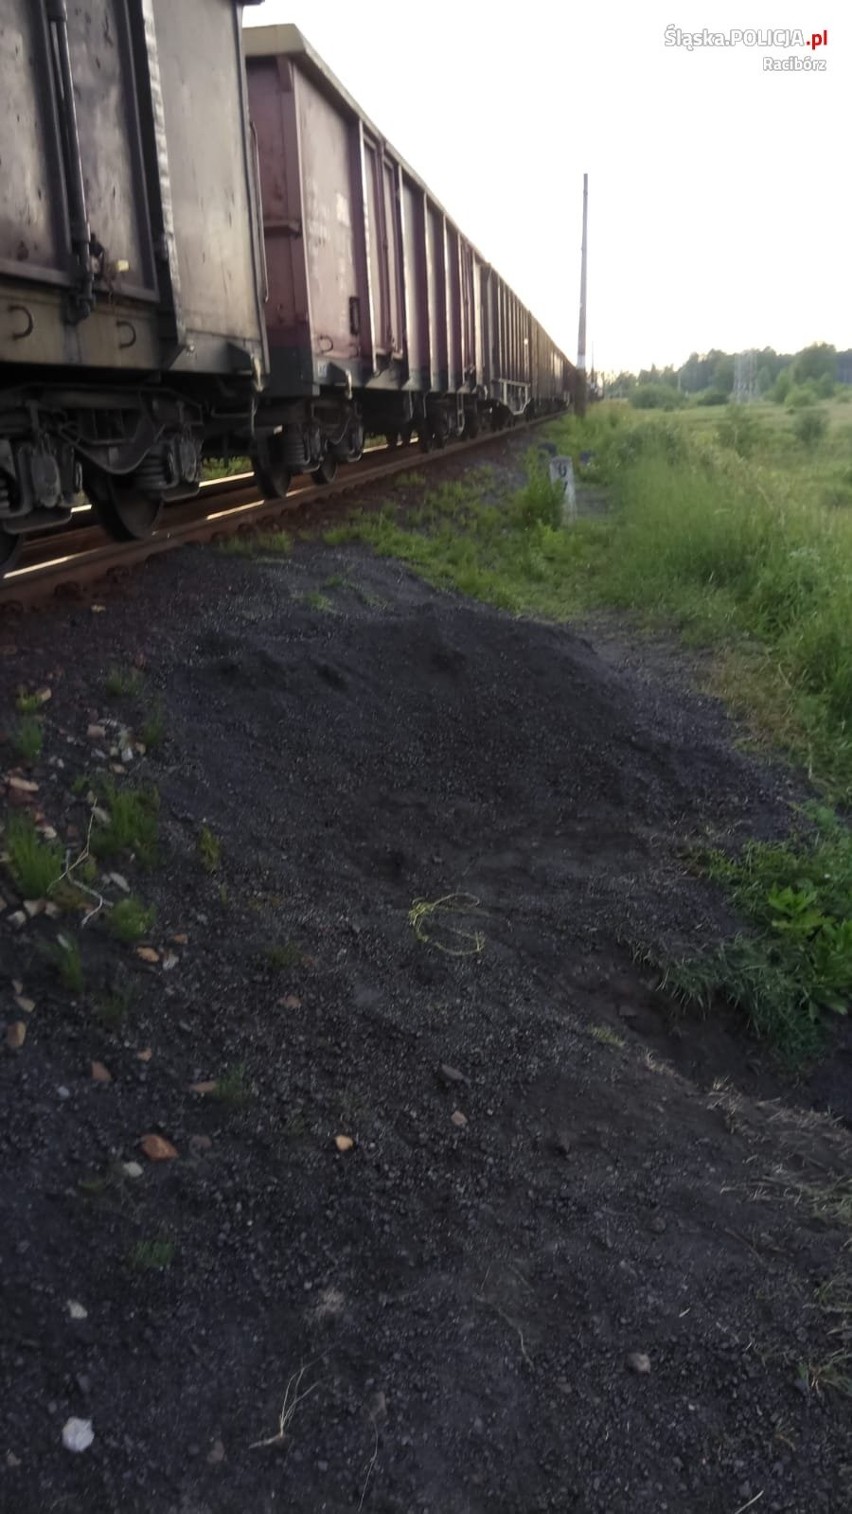 25-latek kradł węgiel z wagonów kolejowych. Dostał mandat